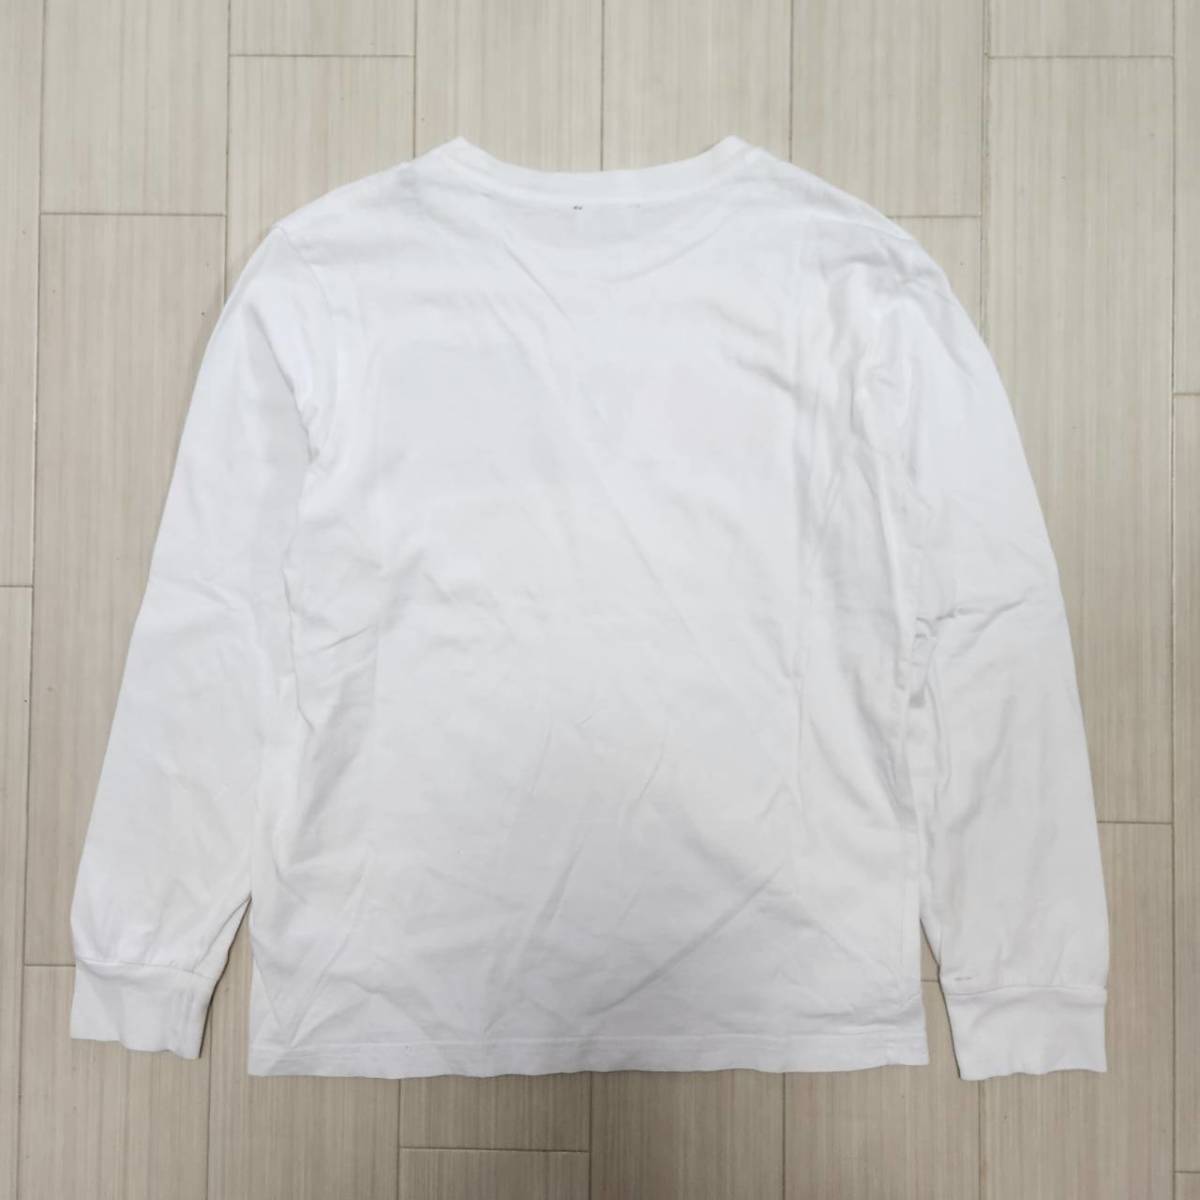 〈ディーゼルキッズ/DIESEL KIDS〉140cm(10) ティーシャツ/Tシャツ/ロンT/長袖/ホワイト白_画像6